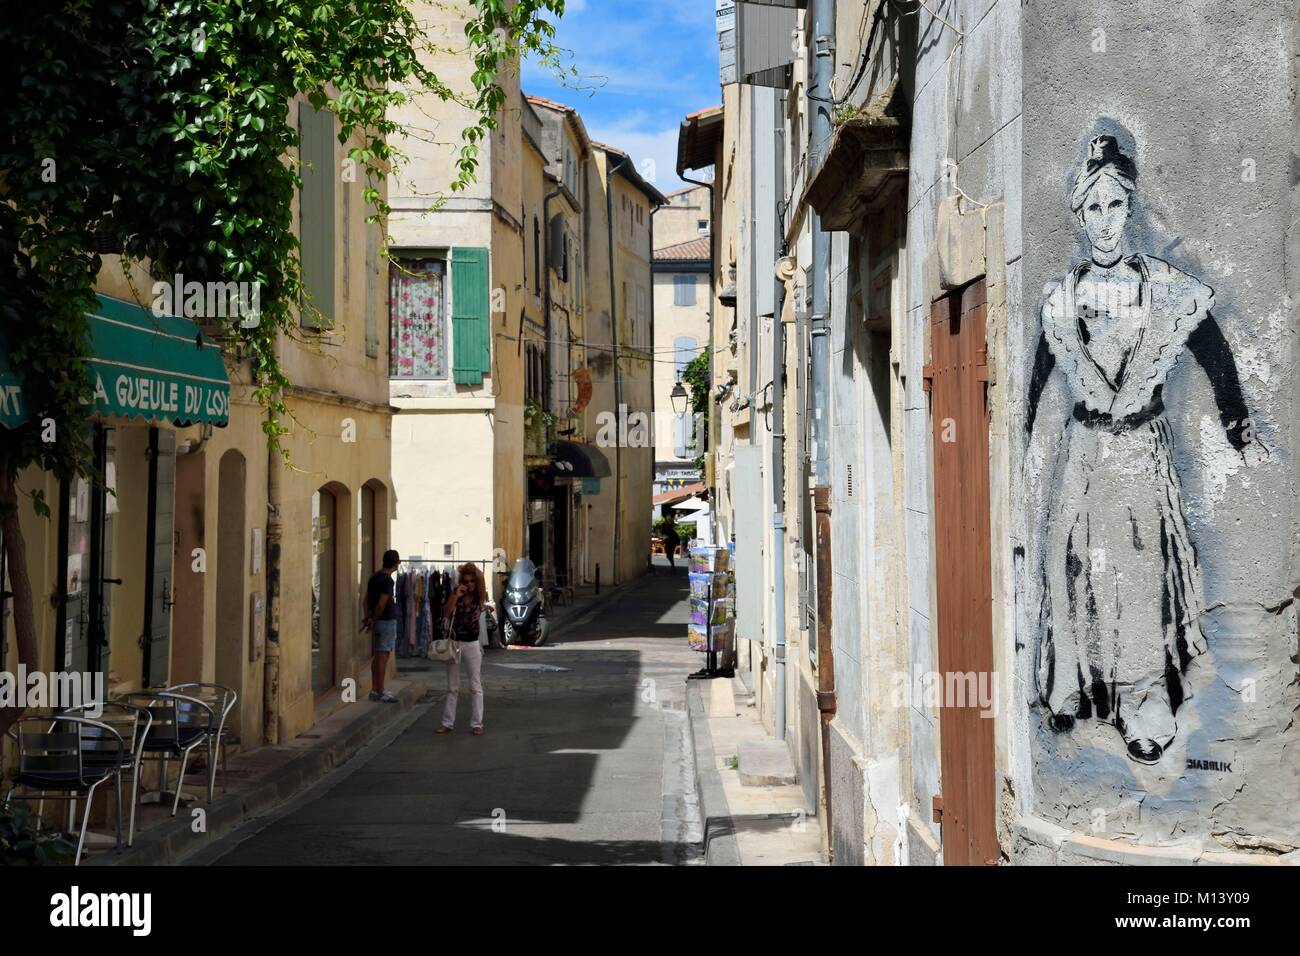 France, Bouches du Rhone, Arles, Arlésienne rue des arènes Stock Photo